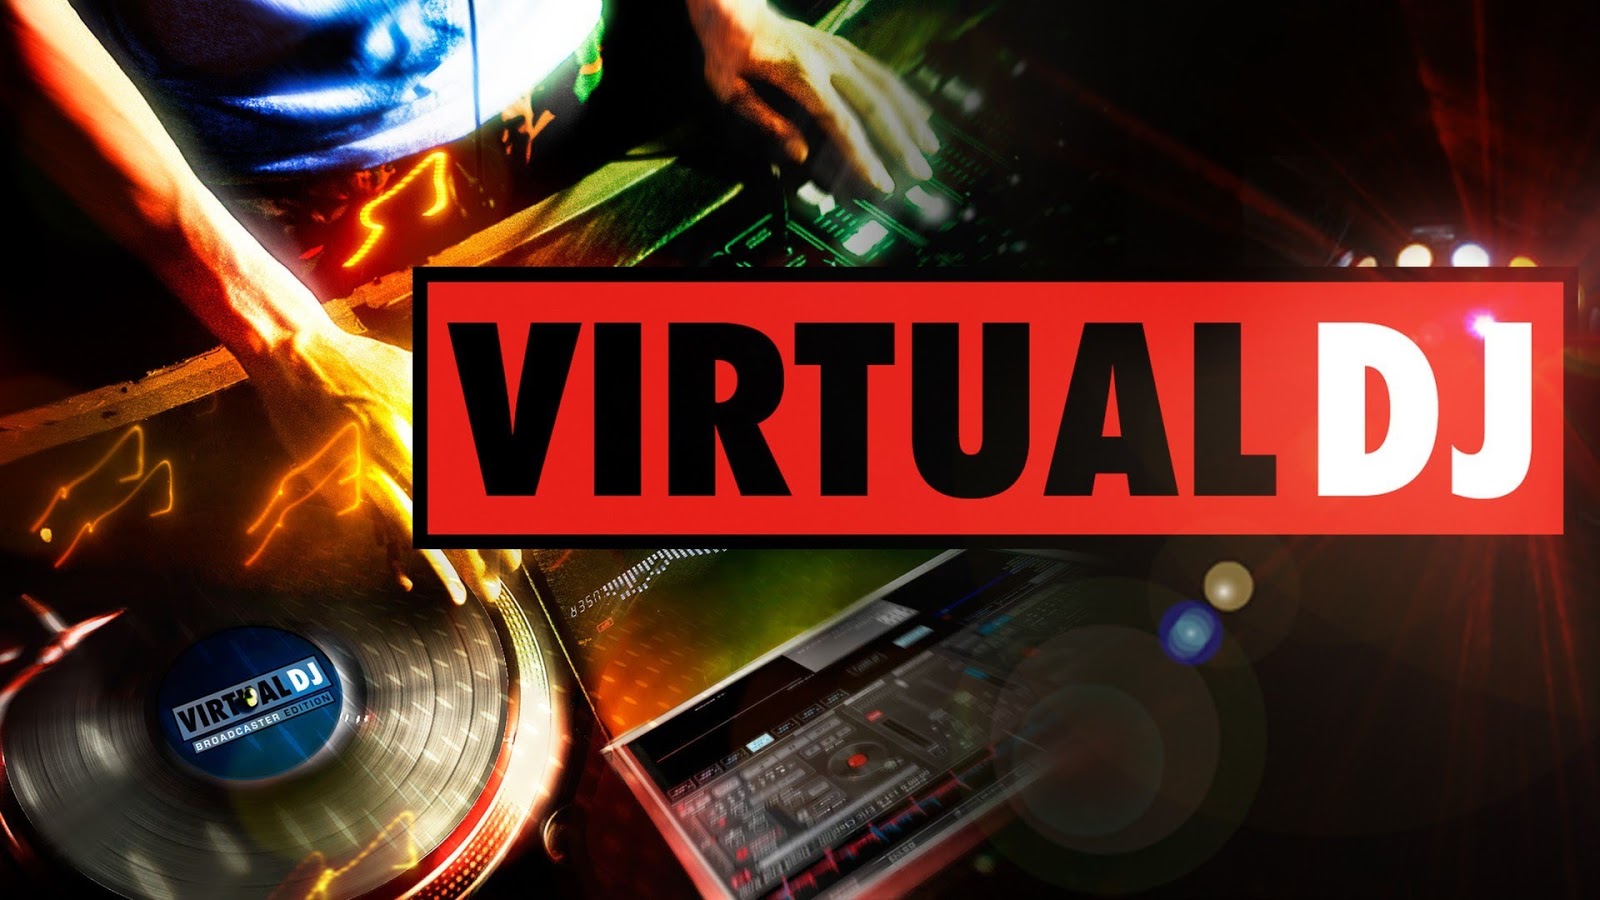 Download virtual dj terbaru untuk laptop pc